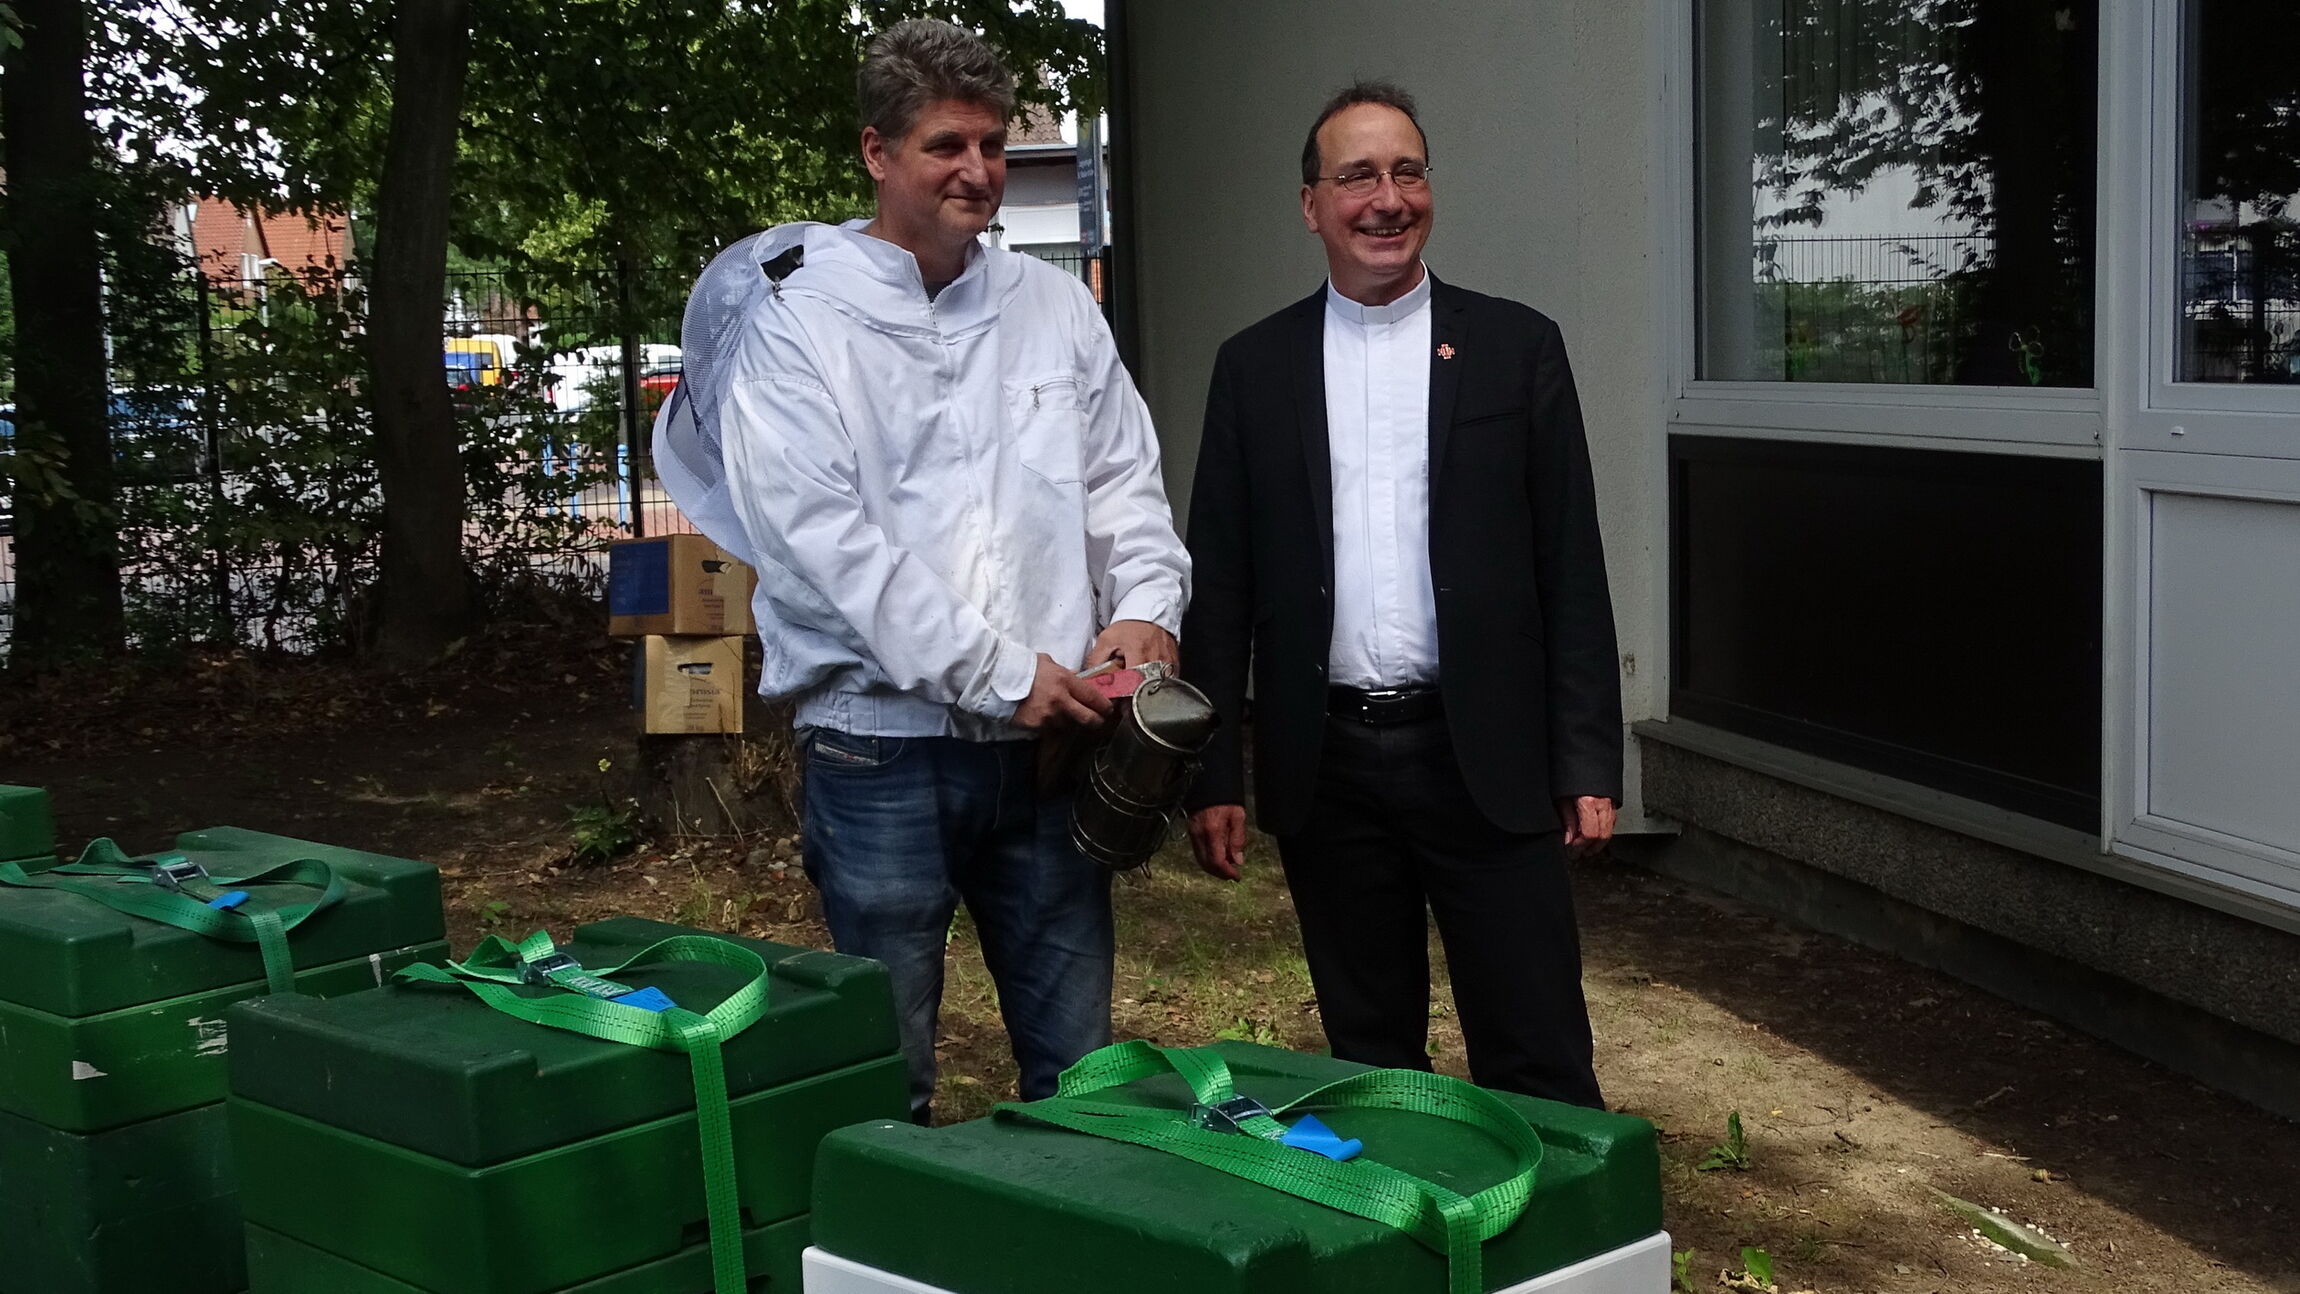 Herr Münch und Pastor Dr. Foerster vor den Bienenstöcken